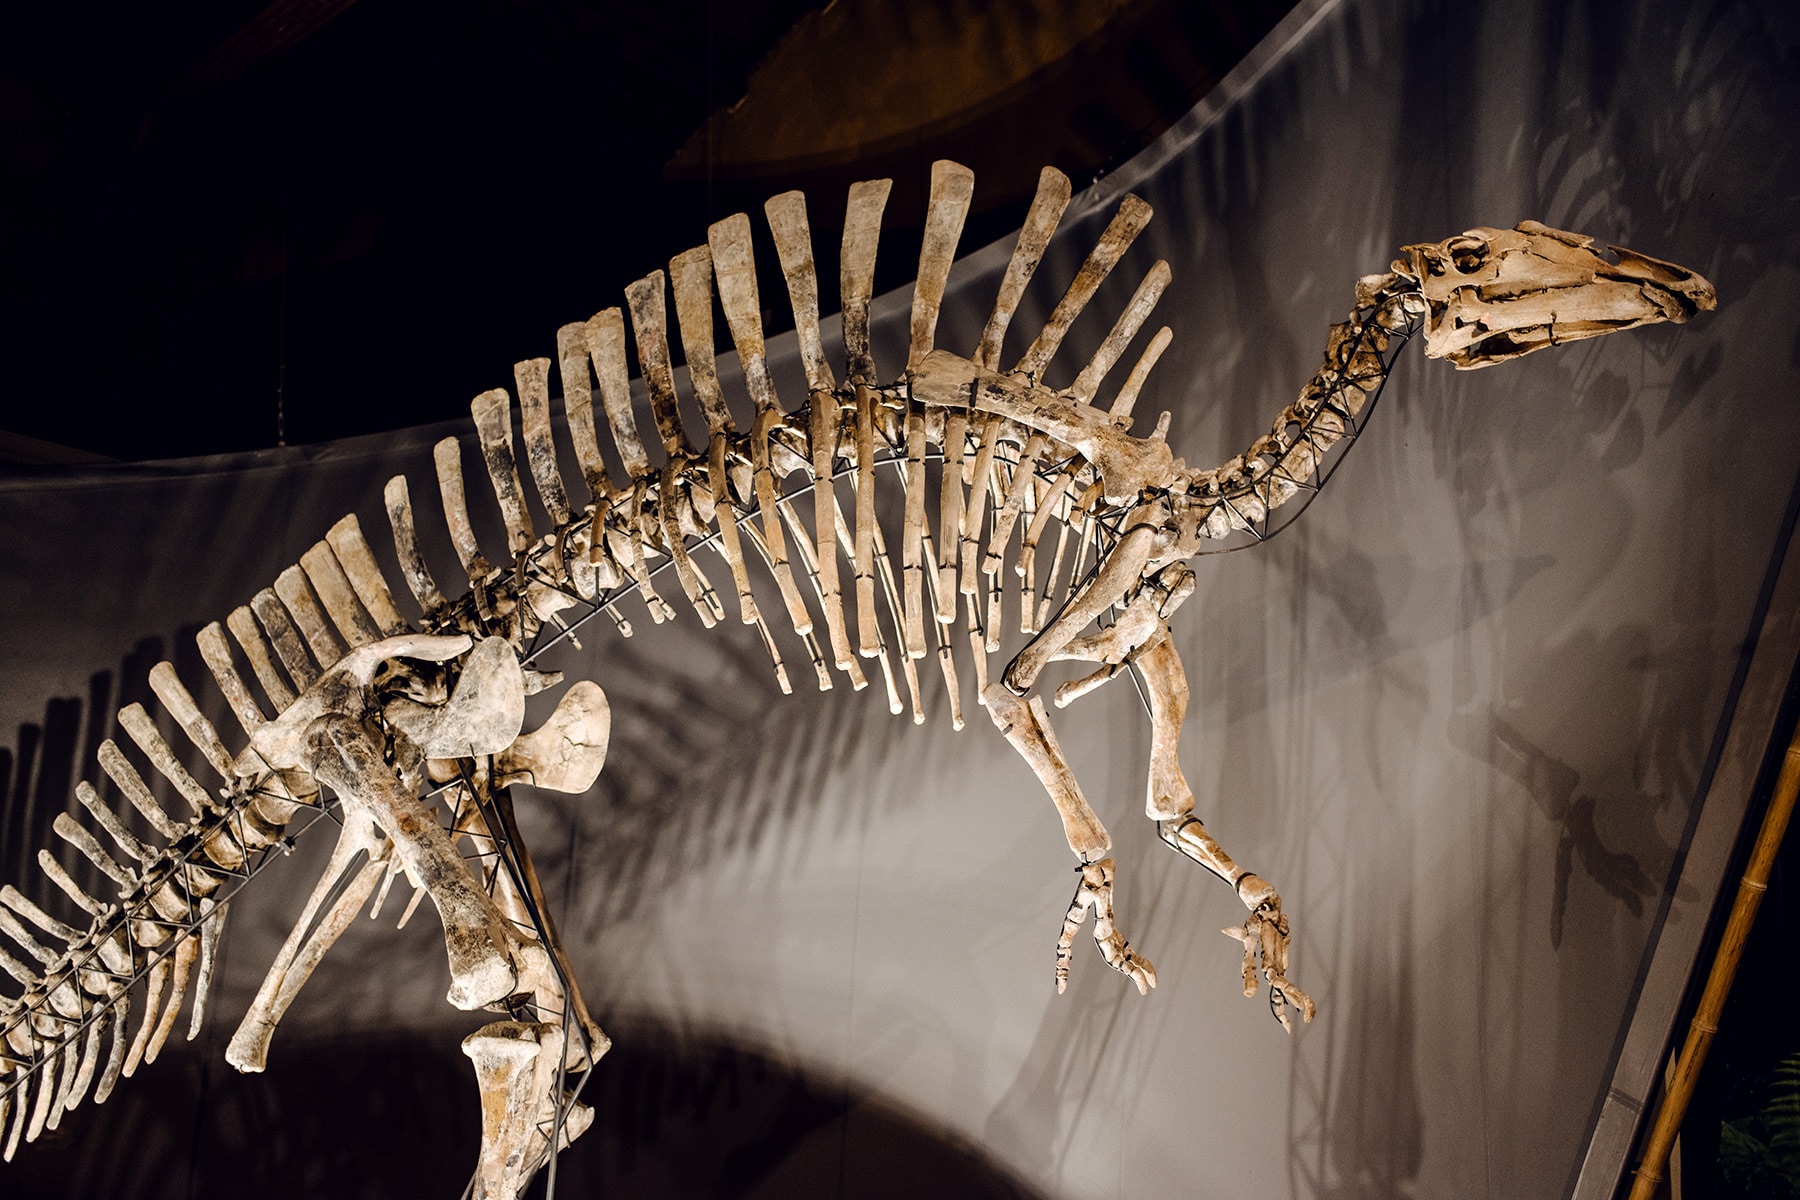 Musée d'histoire naturelle de Venise: squelette de dinosaure Ouranosaurus